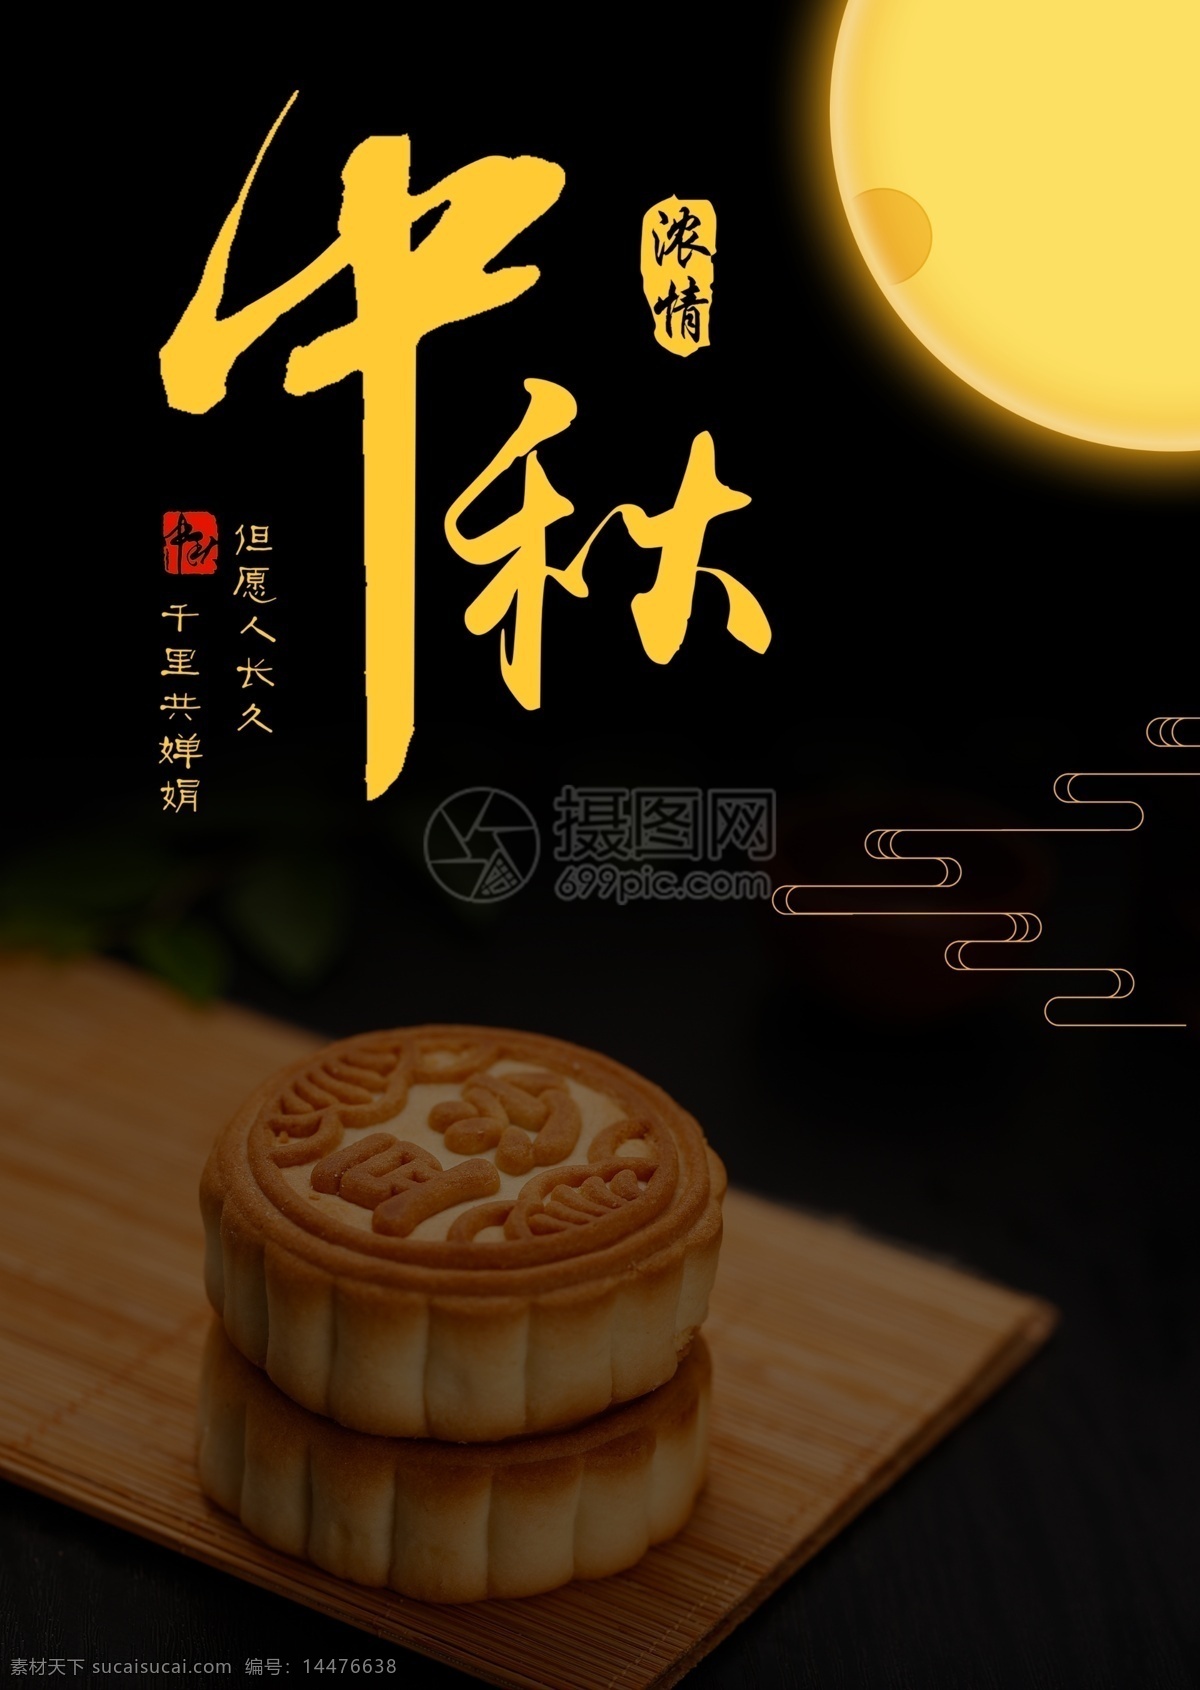 中秋 美味 月饼 美食 宣传单 中秋节 食物 餐饮 菜单